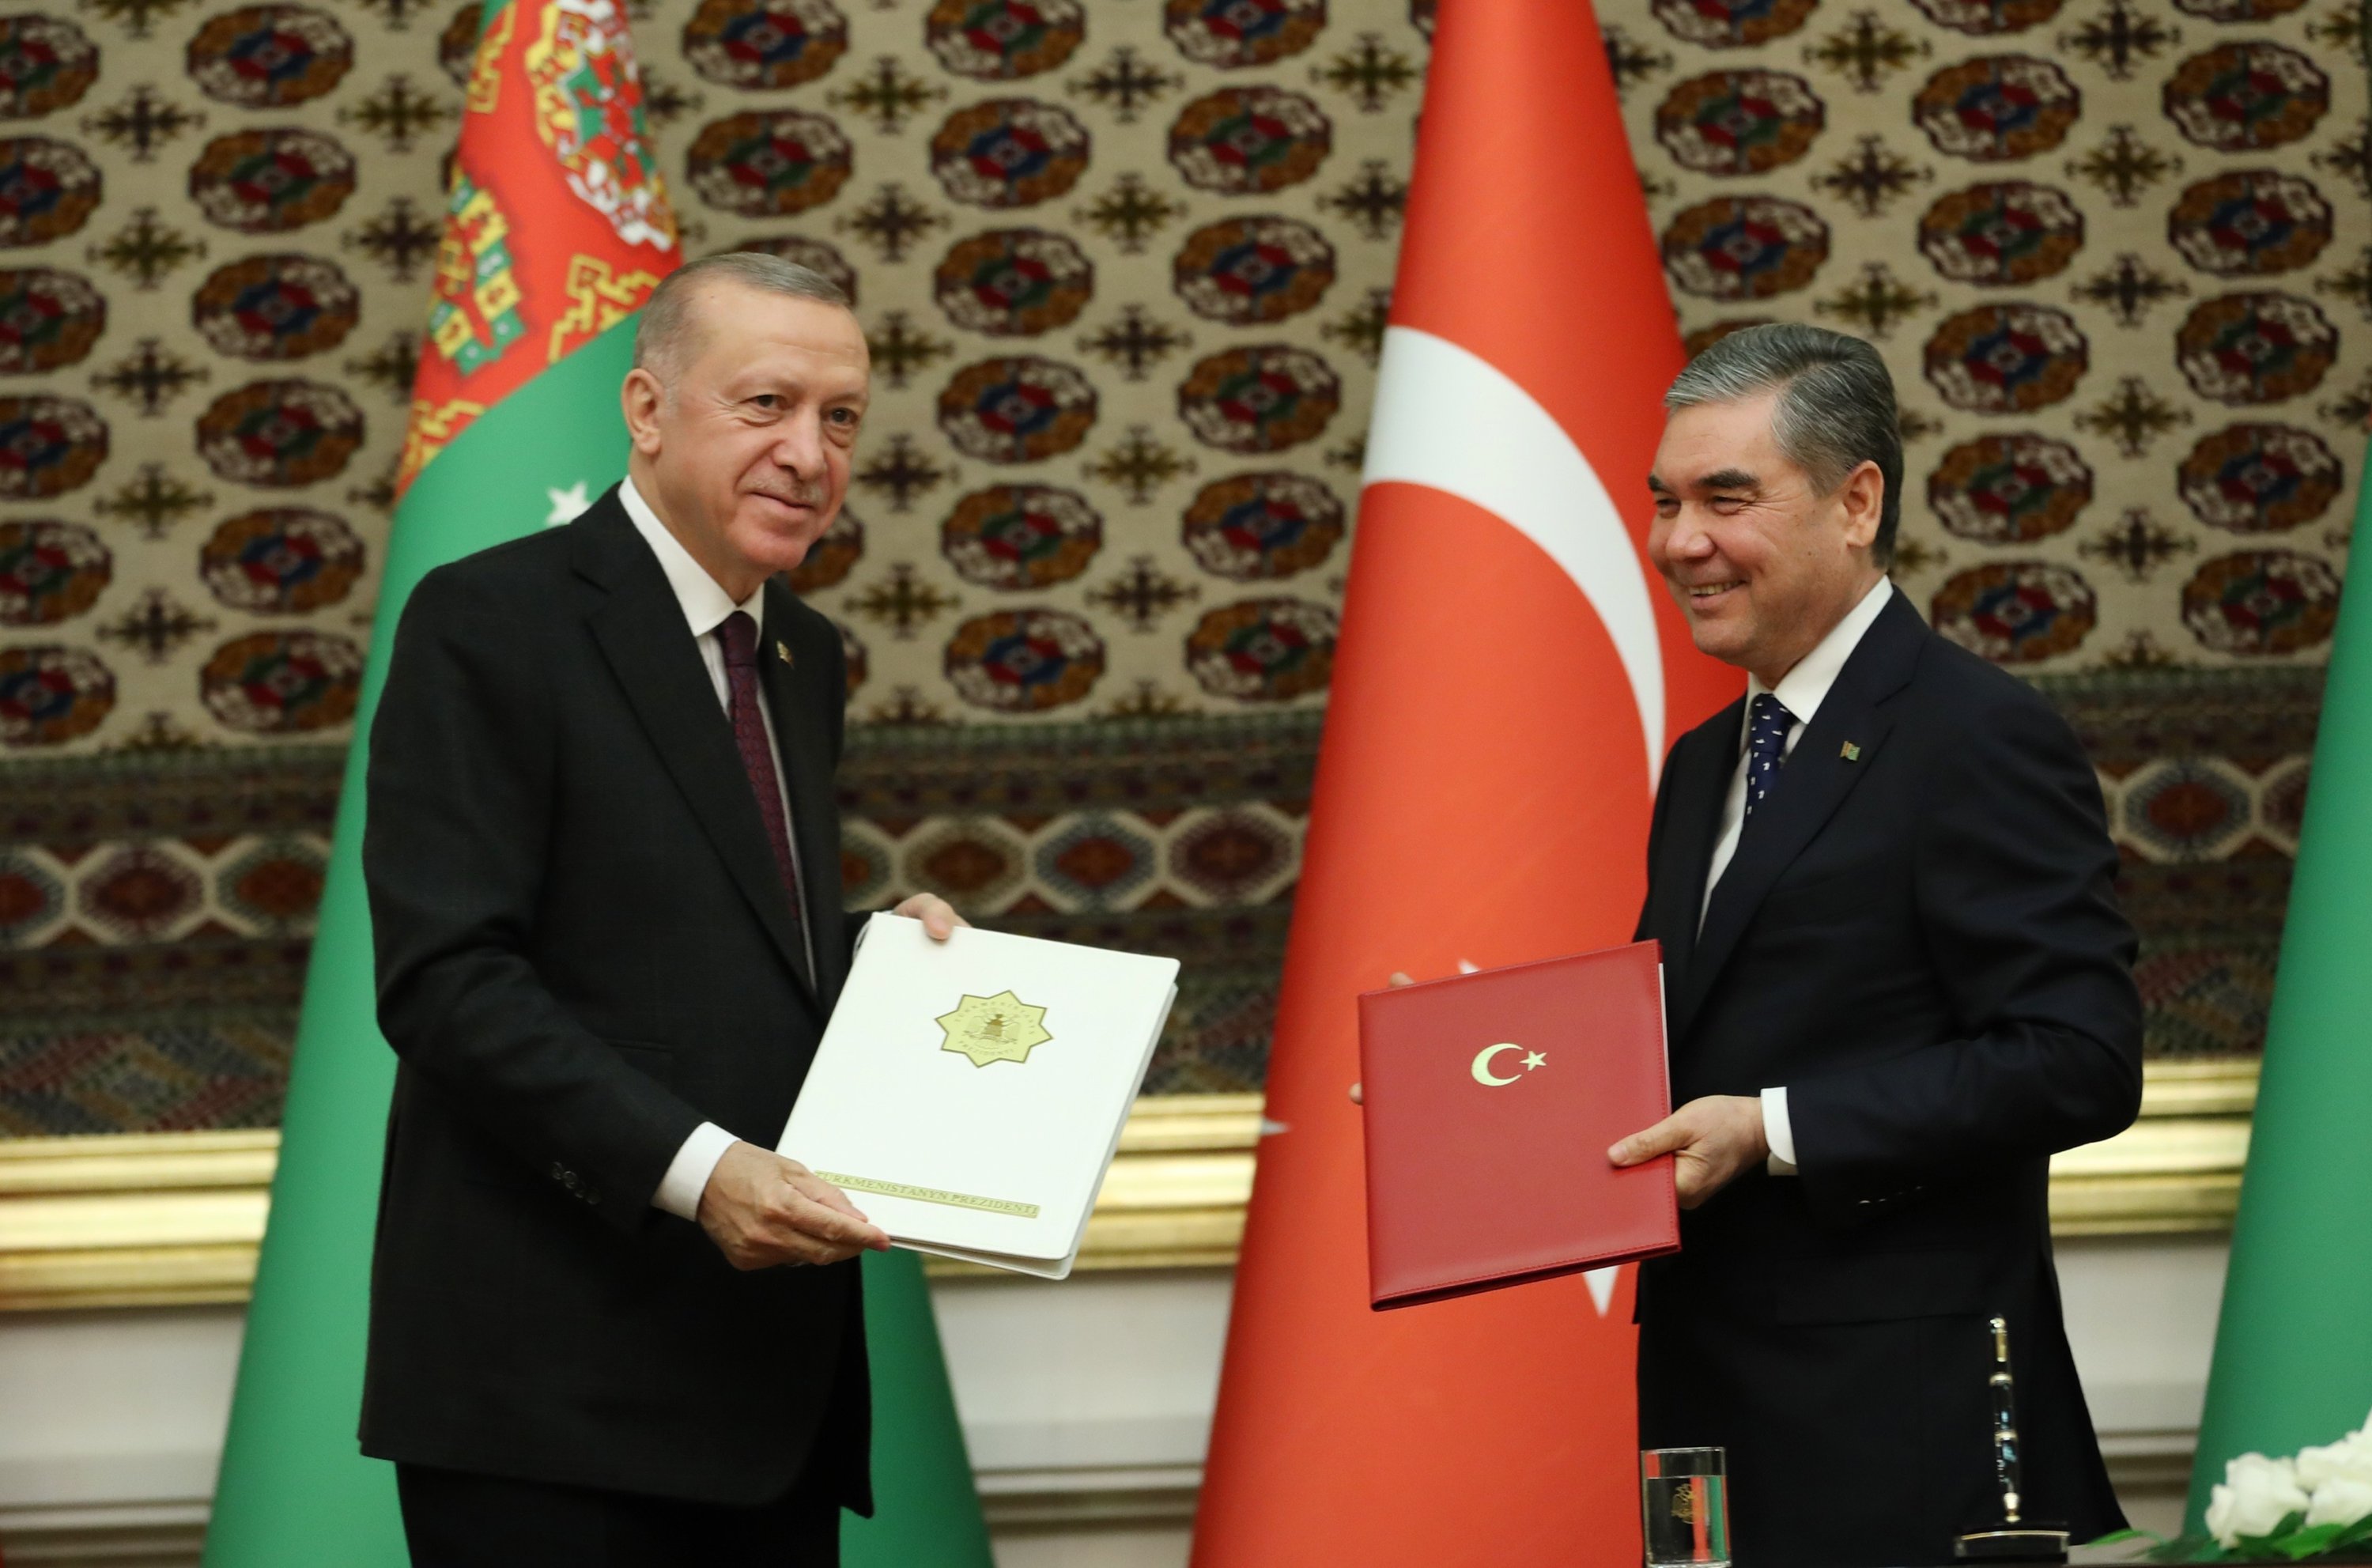 Turkey, Turkmenistan sign deals, strengthen ties in Erdoğan's visit ...